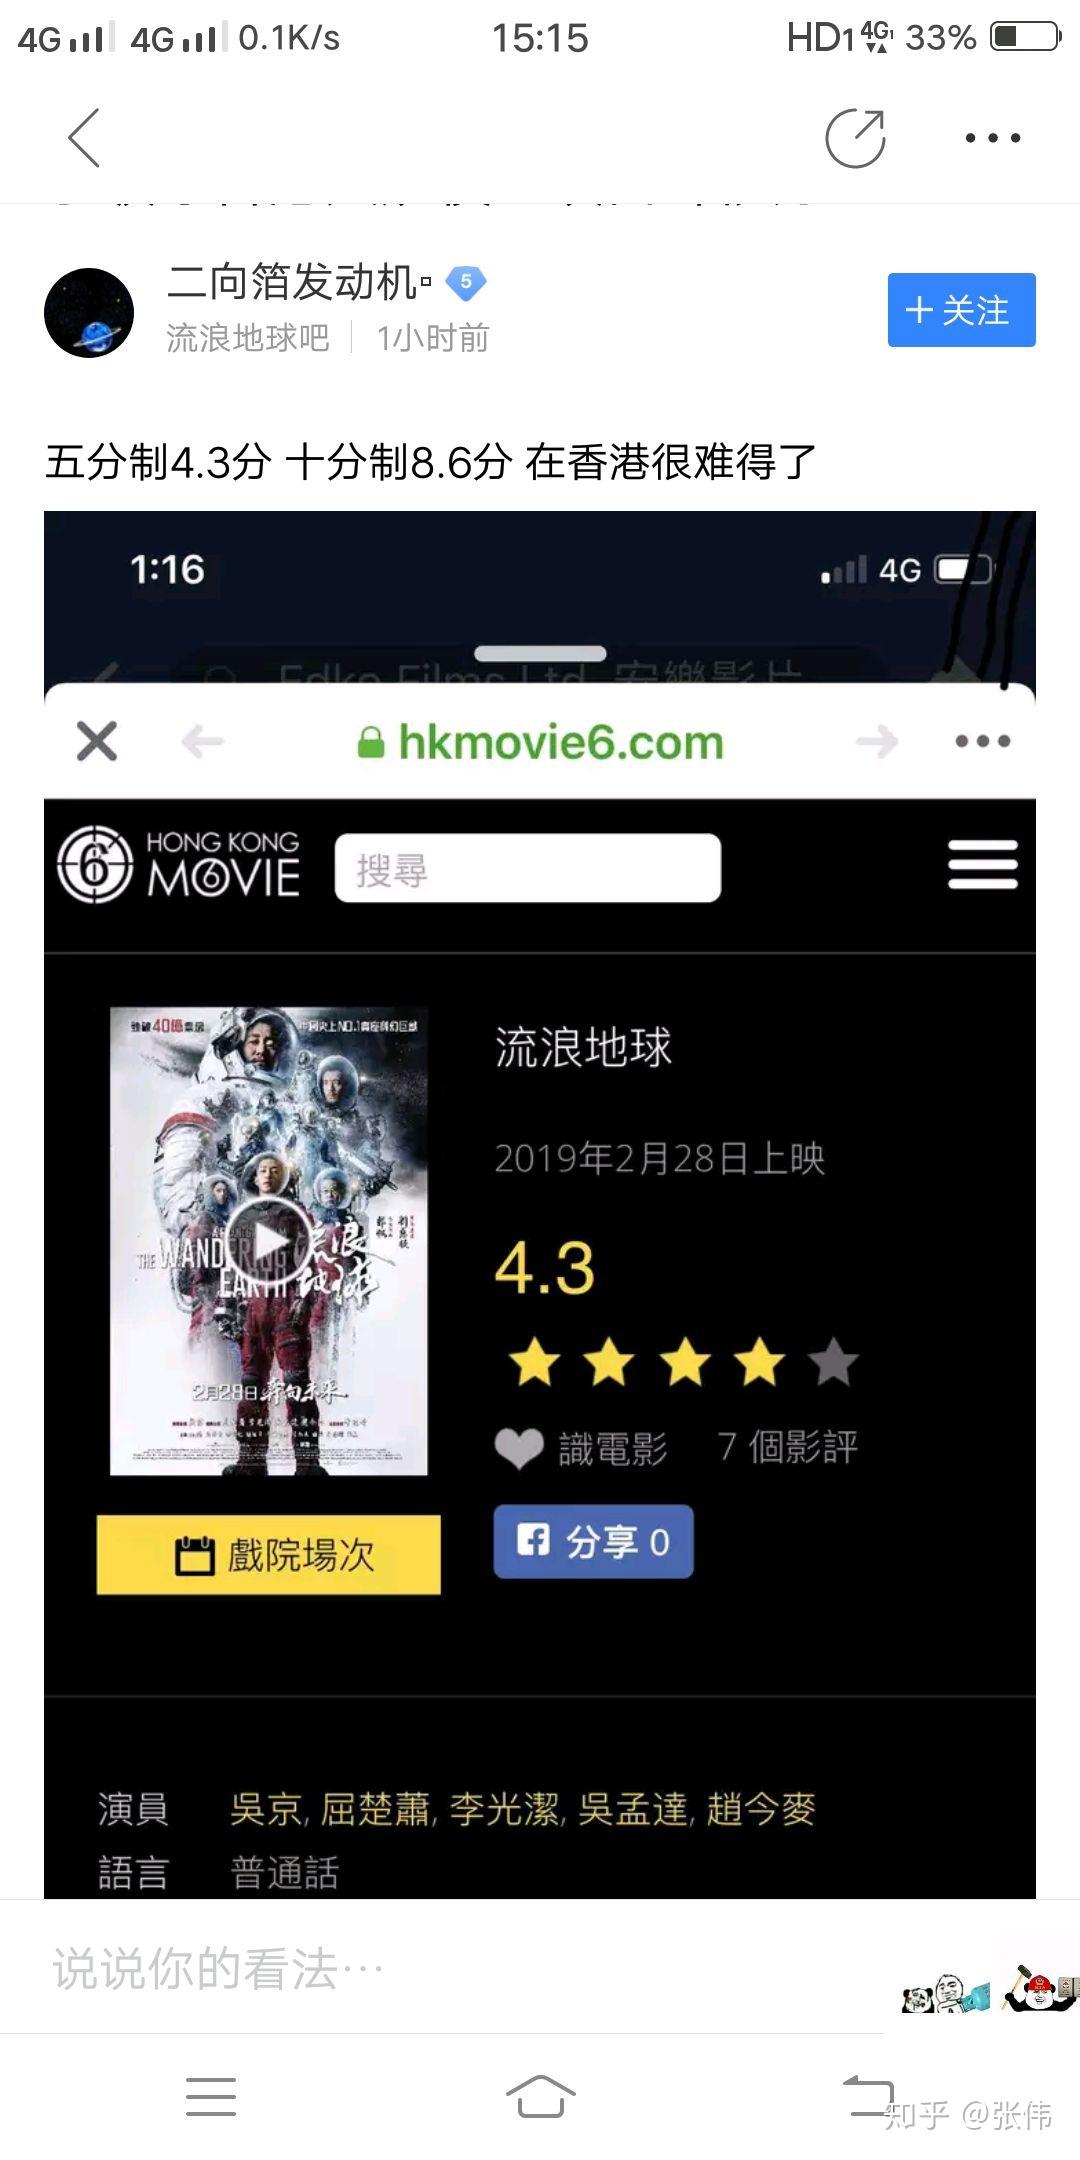 如何看待《流浪地球》香港上映首日评分5.8分